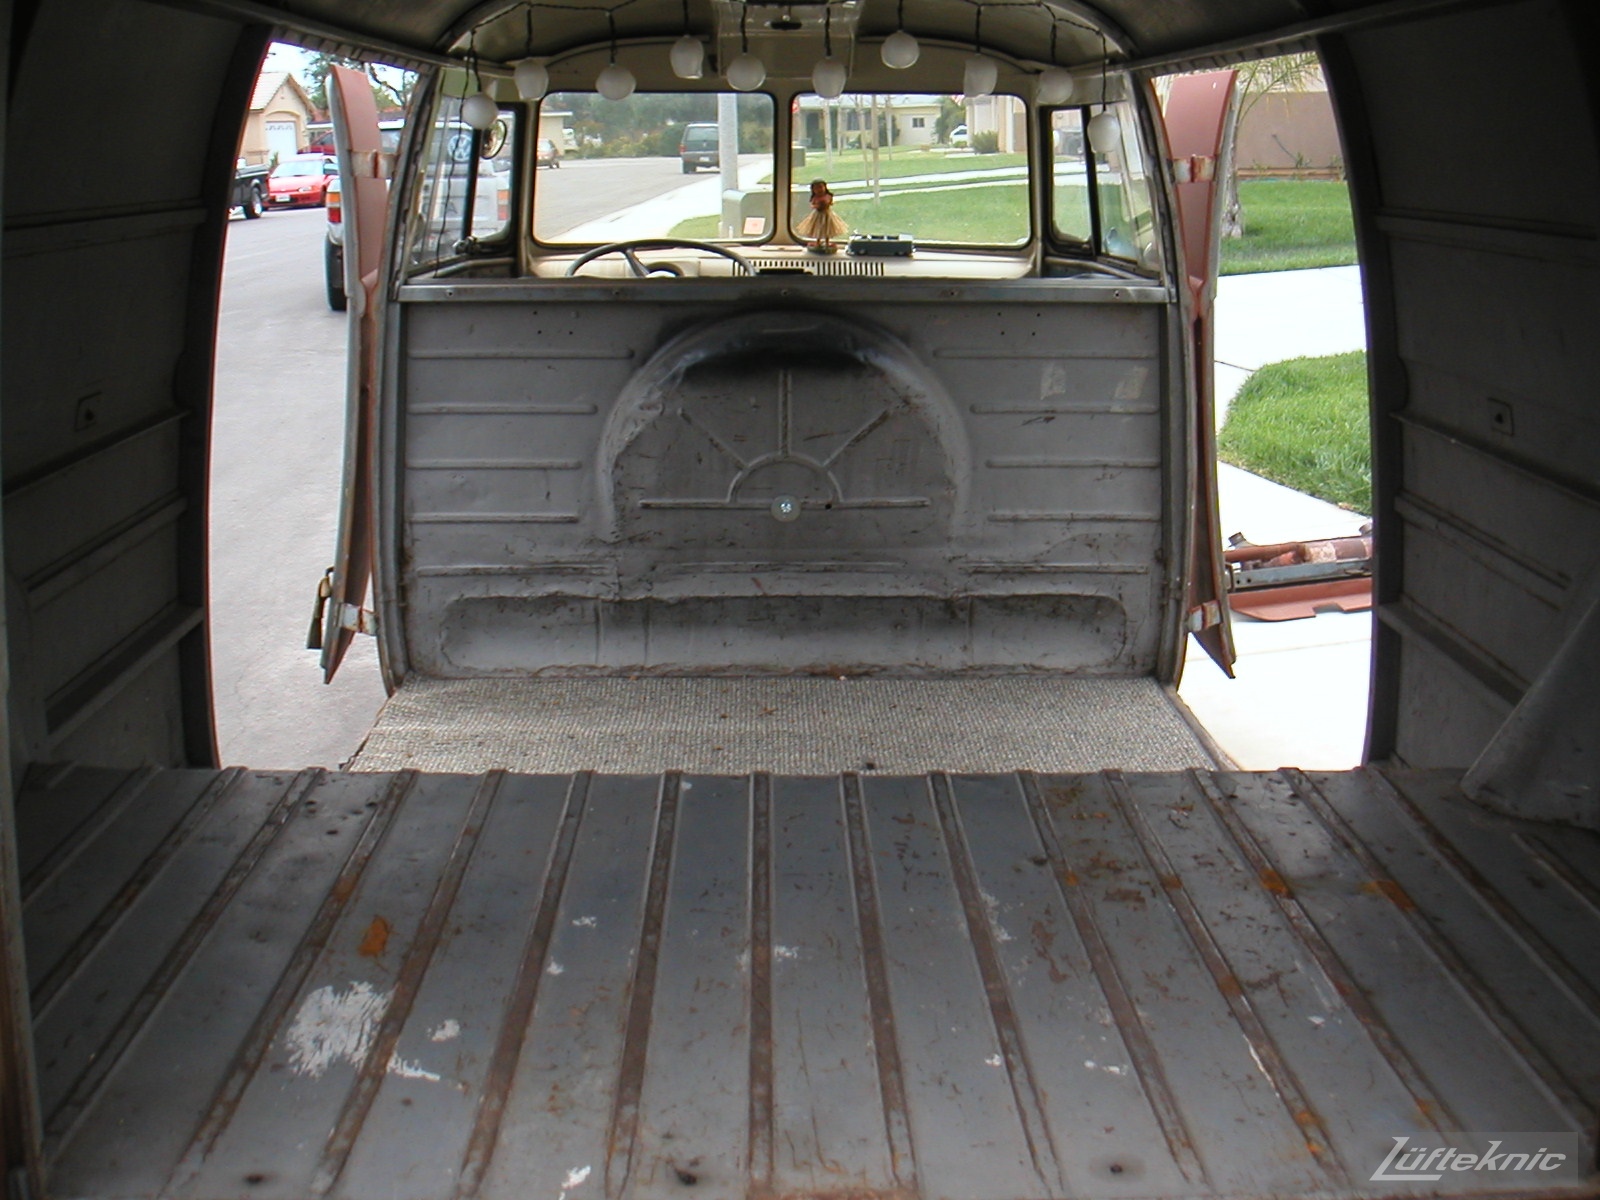 1956 Volkswagen double panel Transporter interior.